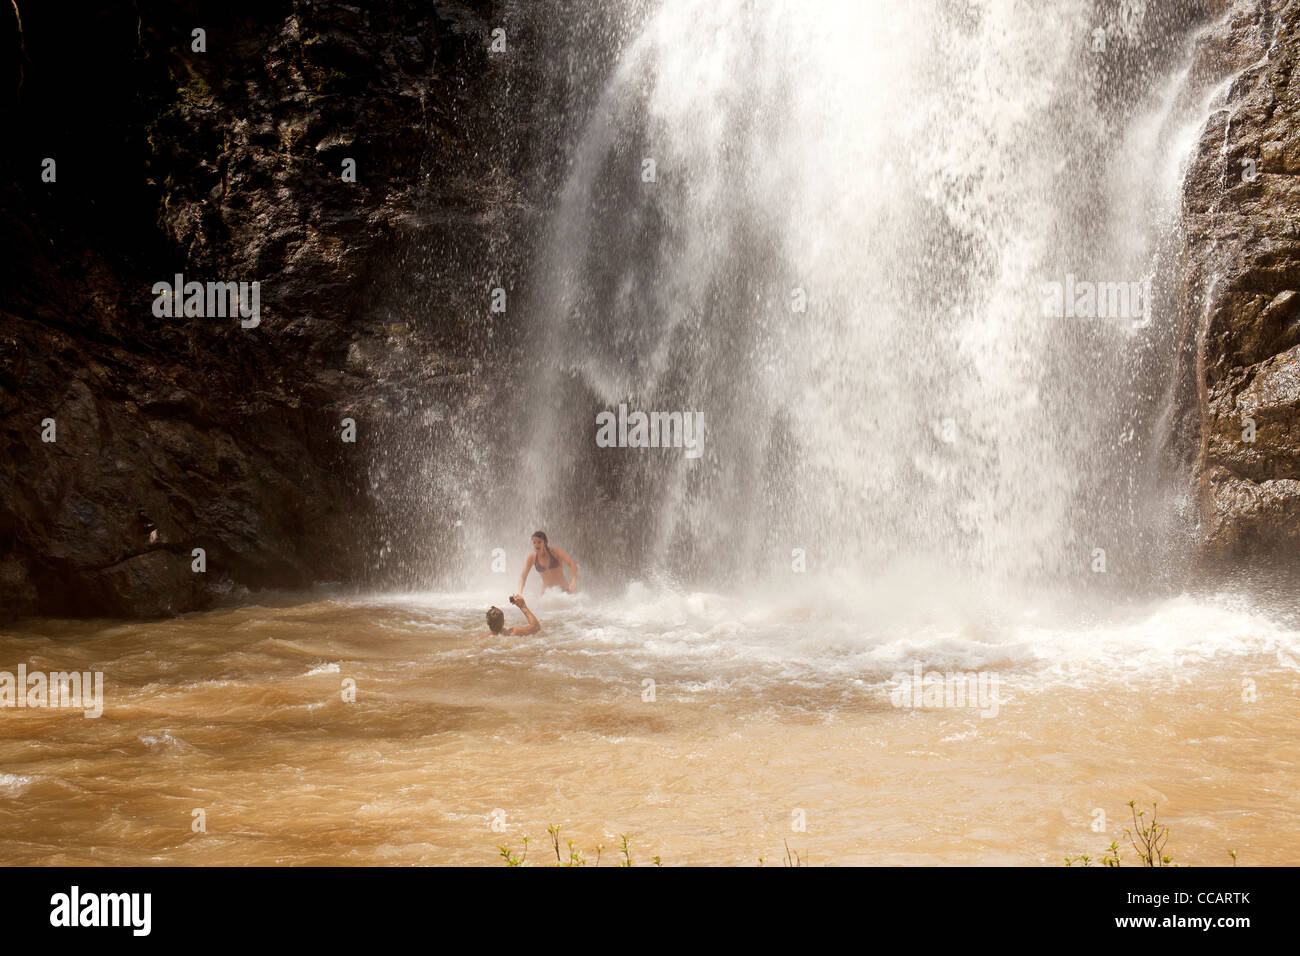 Montezuma Waterfall, Montezuma, Nicoya Peninsula, Costa Rica, Central America Stock Photo